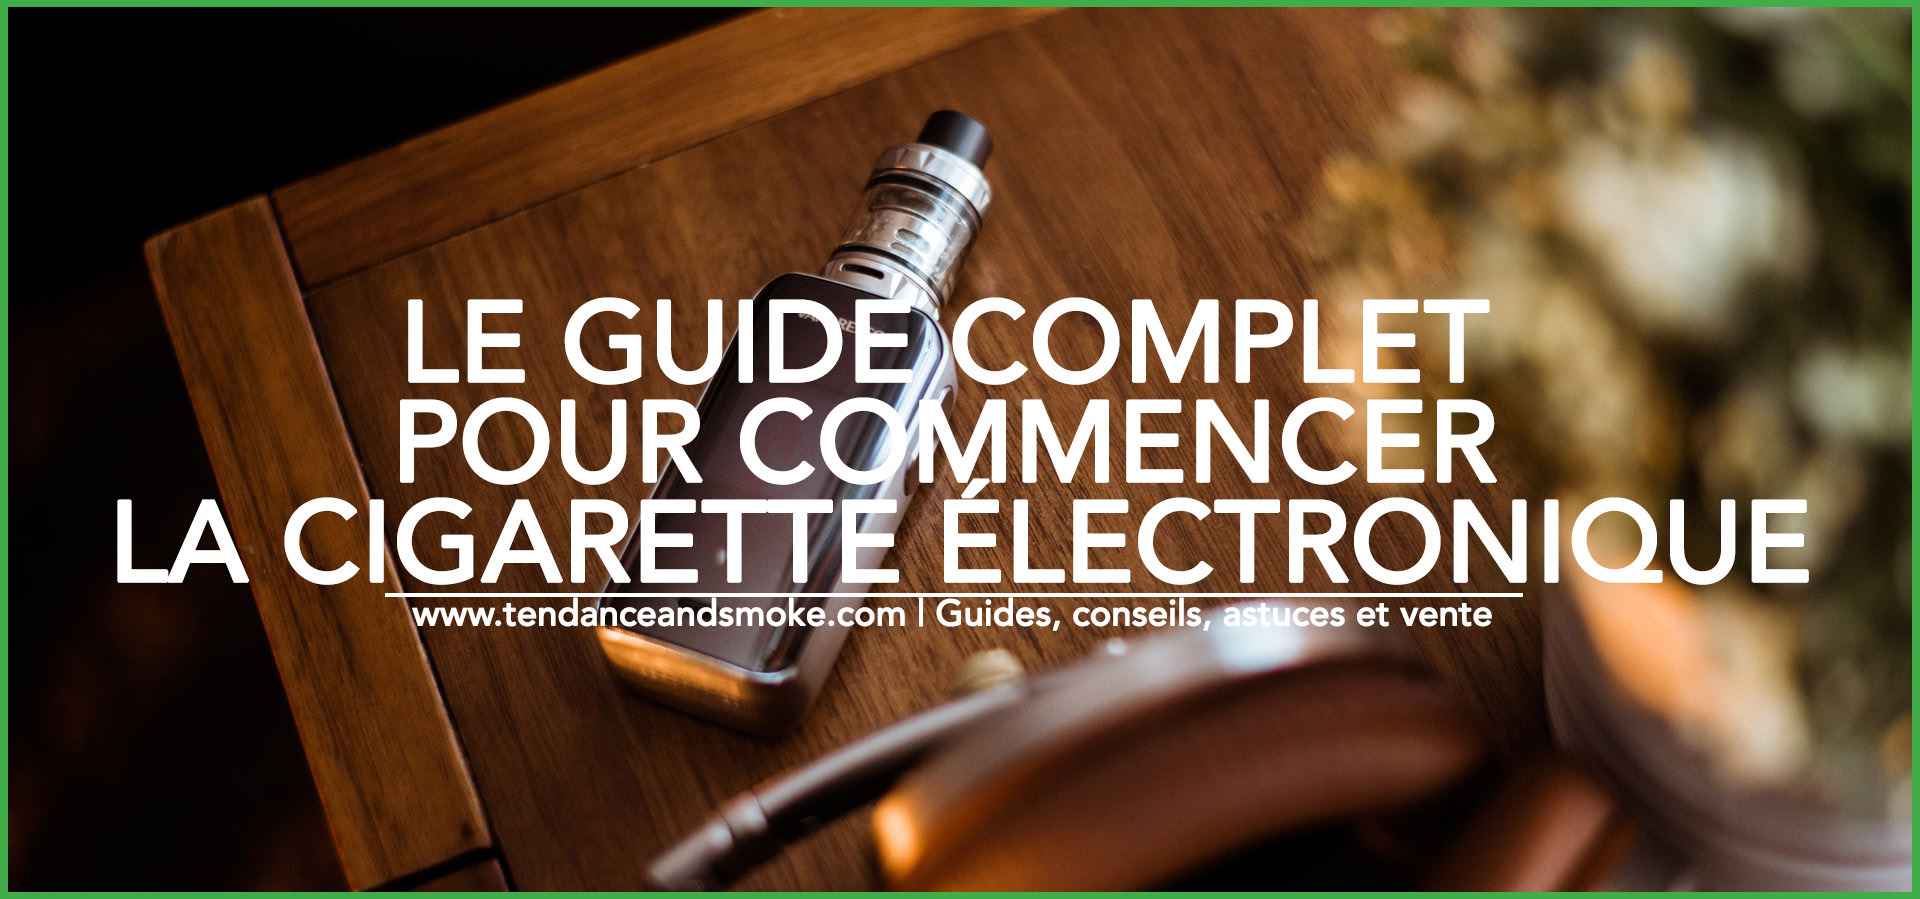 Le guide complet pour commencer la cigarette électronique